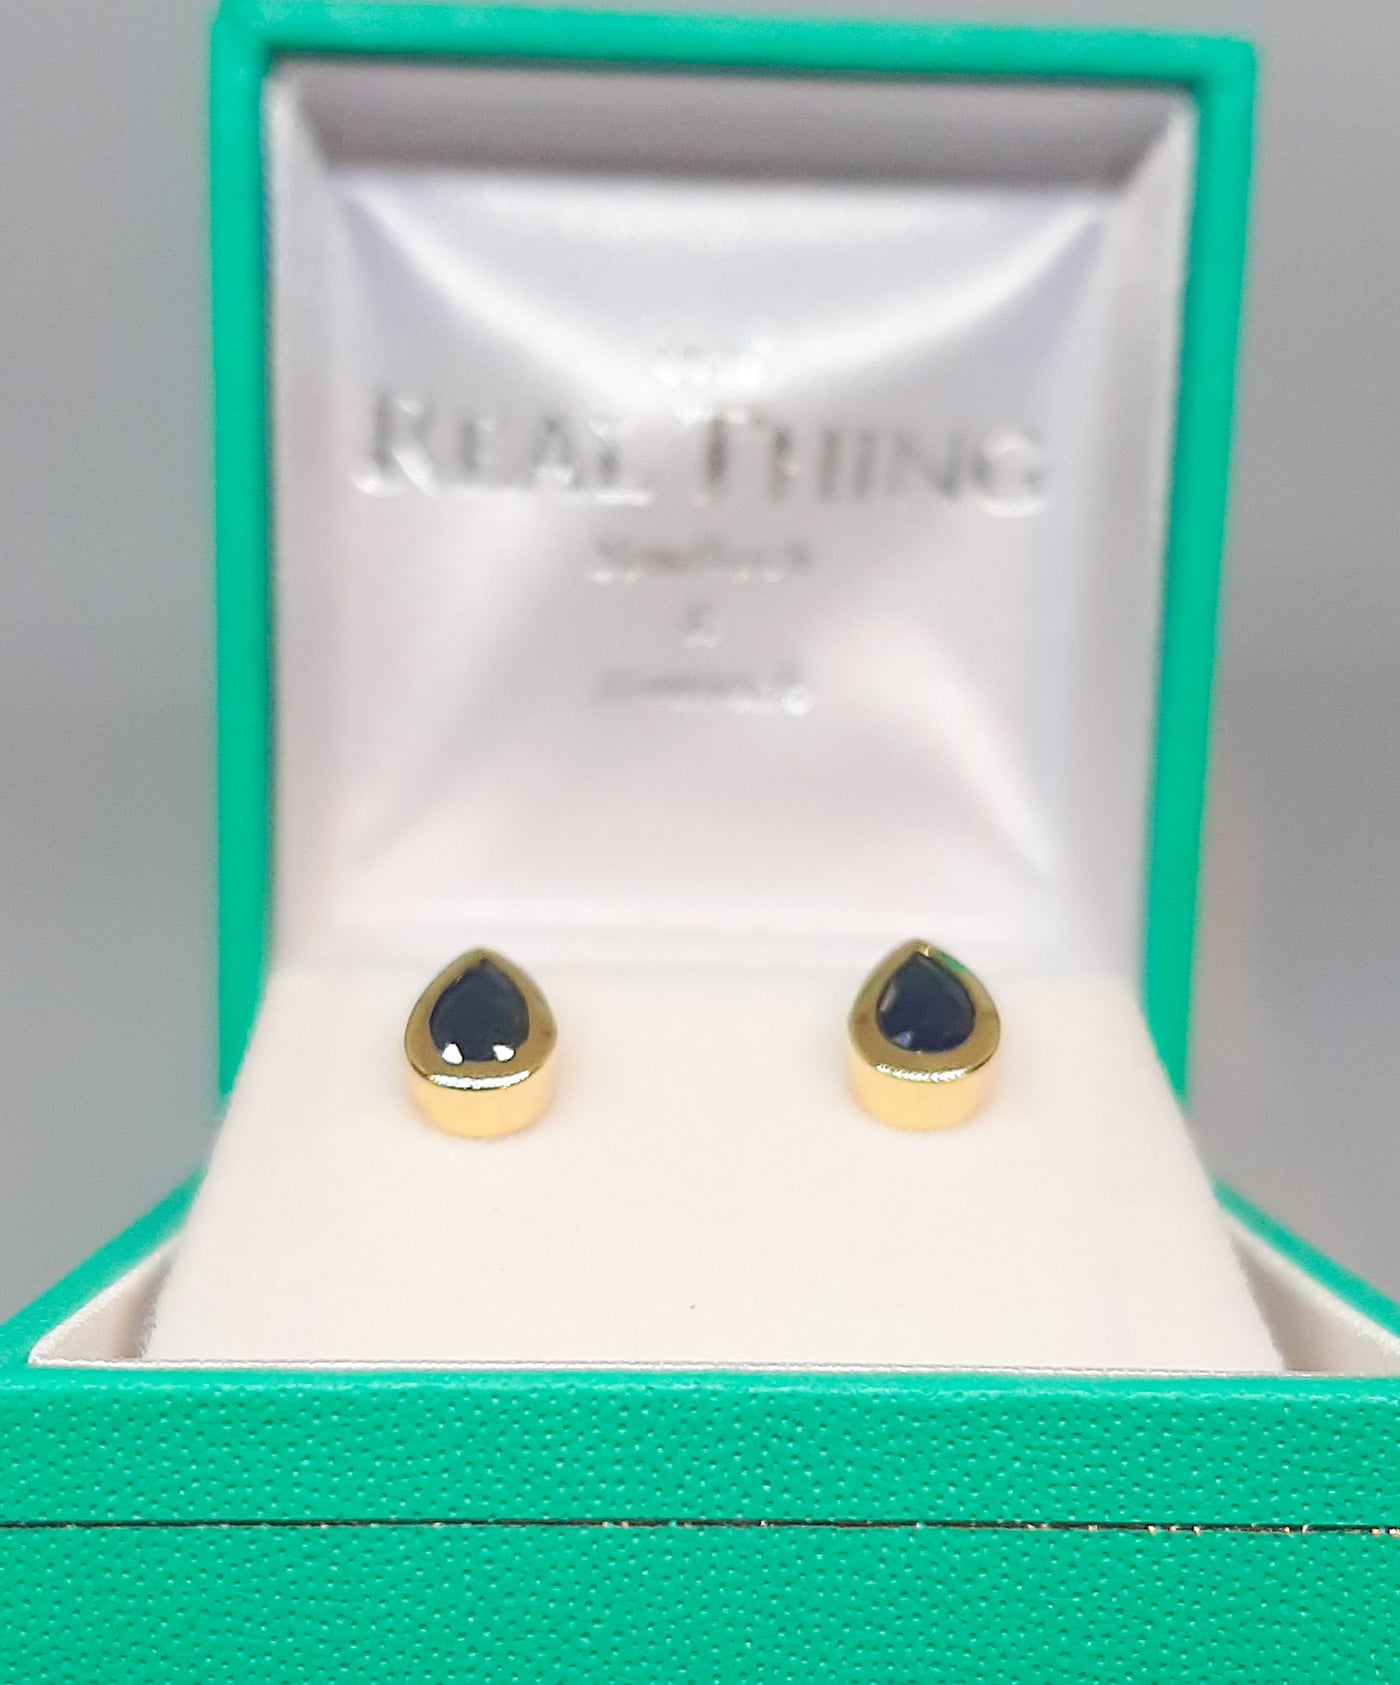 9ct Gold Sapphire Teardrop Stud Earrings